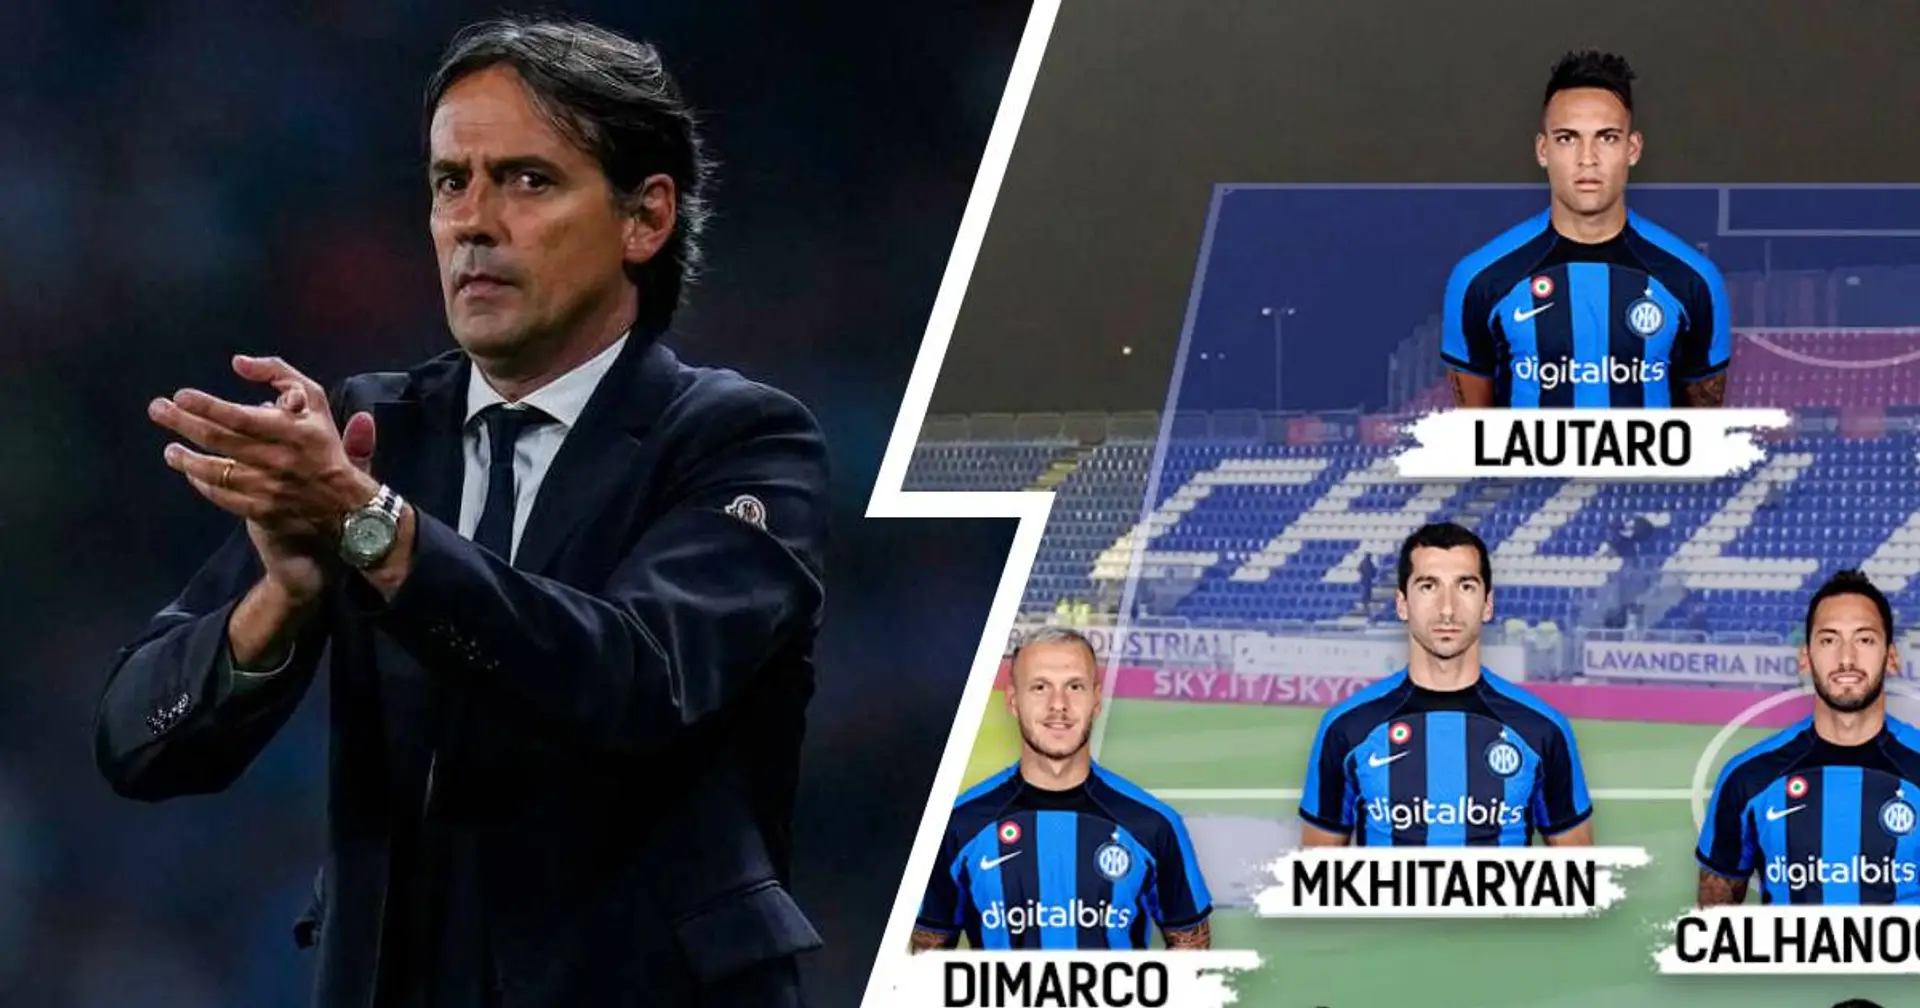 FORMAZIONI UFFICIALI 👉 Cagliari vs Inter: de Vrij dal 1', scelto il partner di Lautaro 